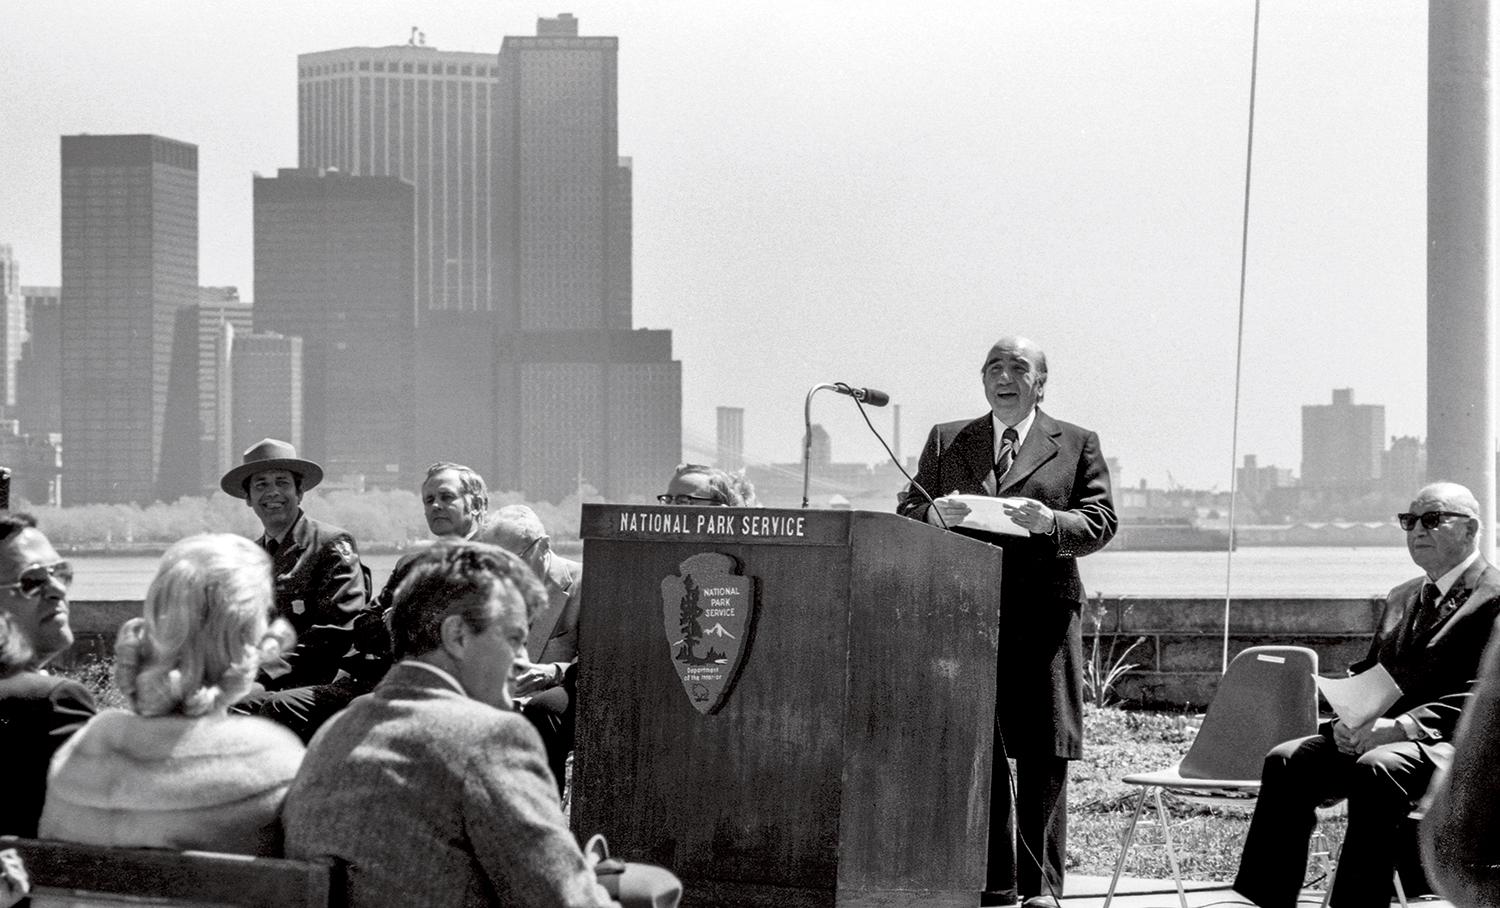 A man stands at a podium, giving a speech.